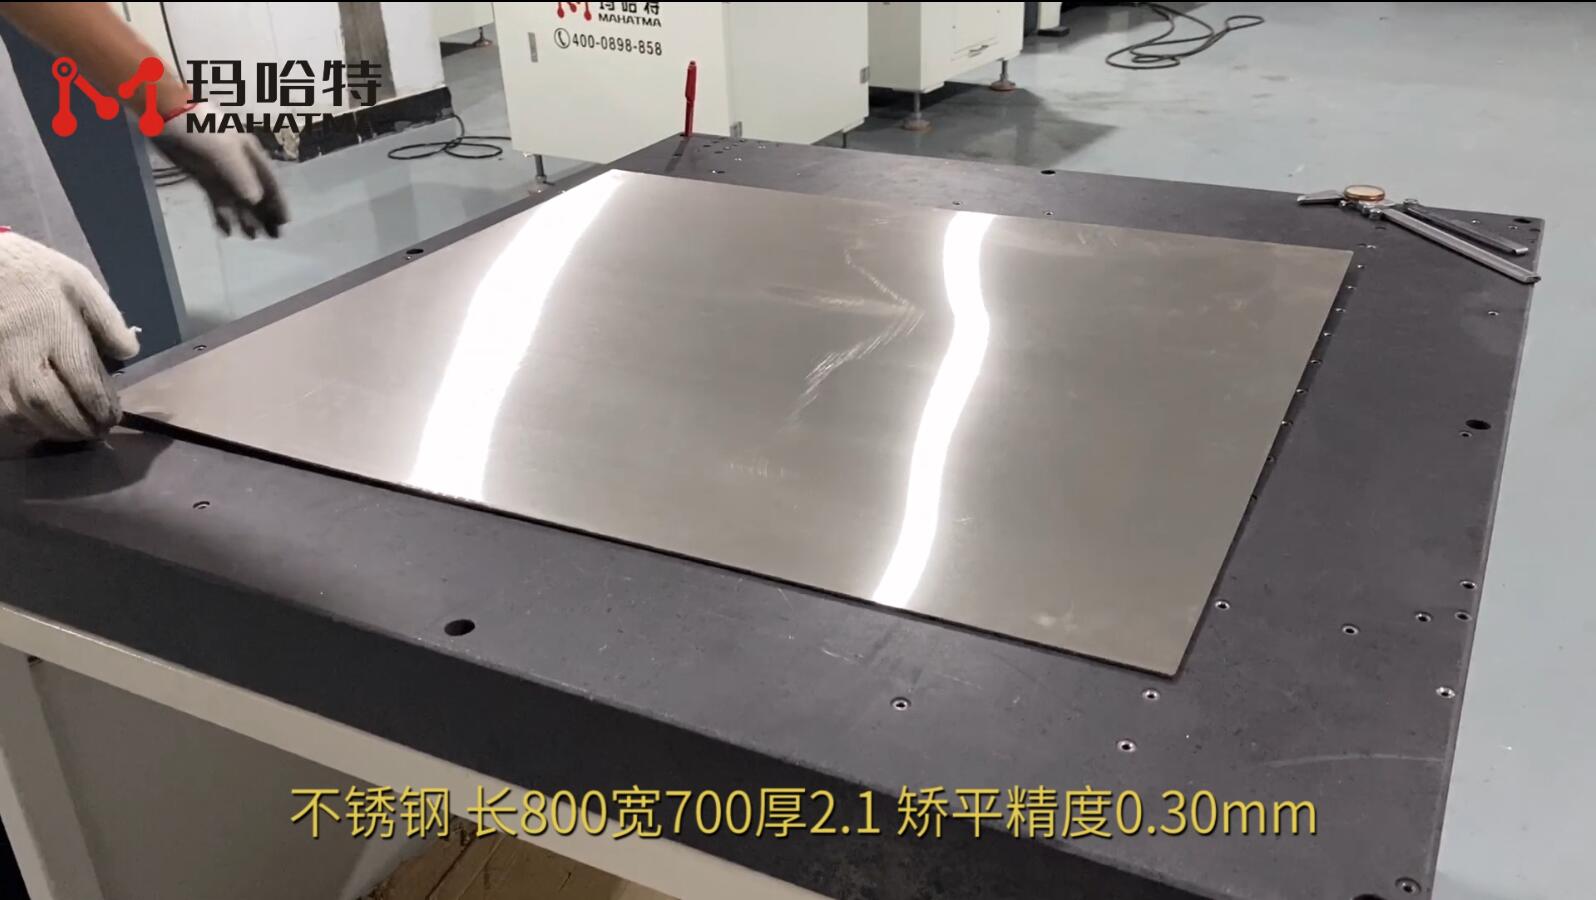 不锈钢 MHT50-1300 长方形 长800宽700厚2.1mm